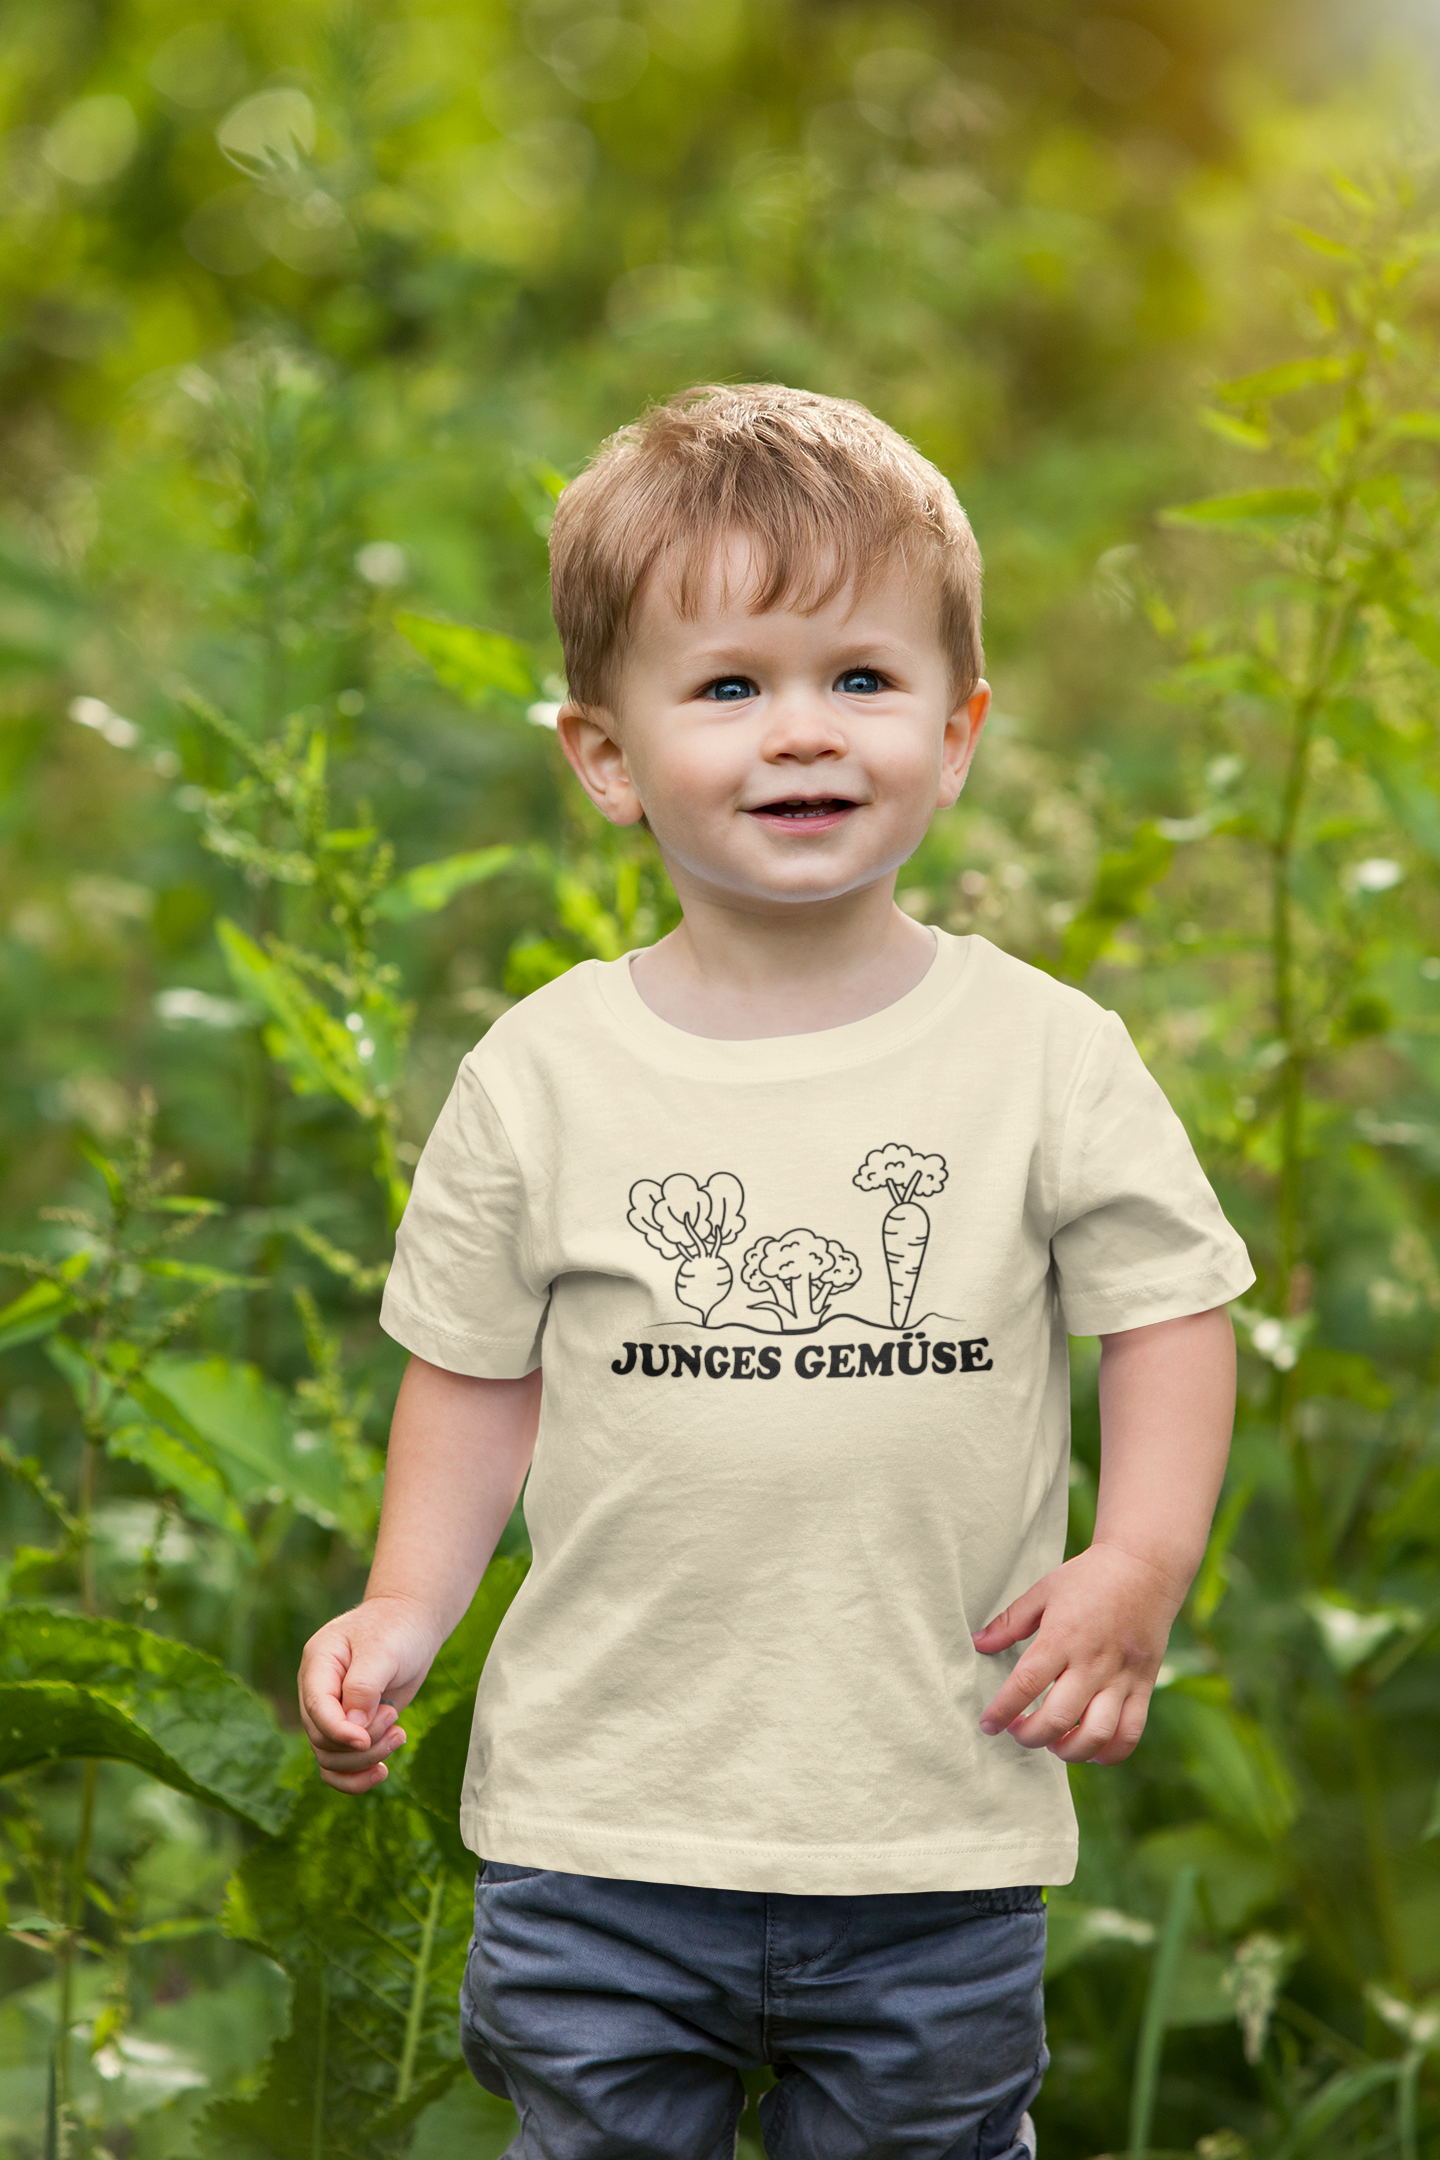 Junges Gemüse - Kinder Organic Shirt - PflanzenFan